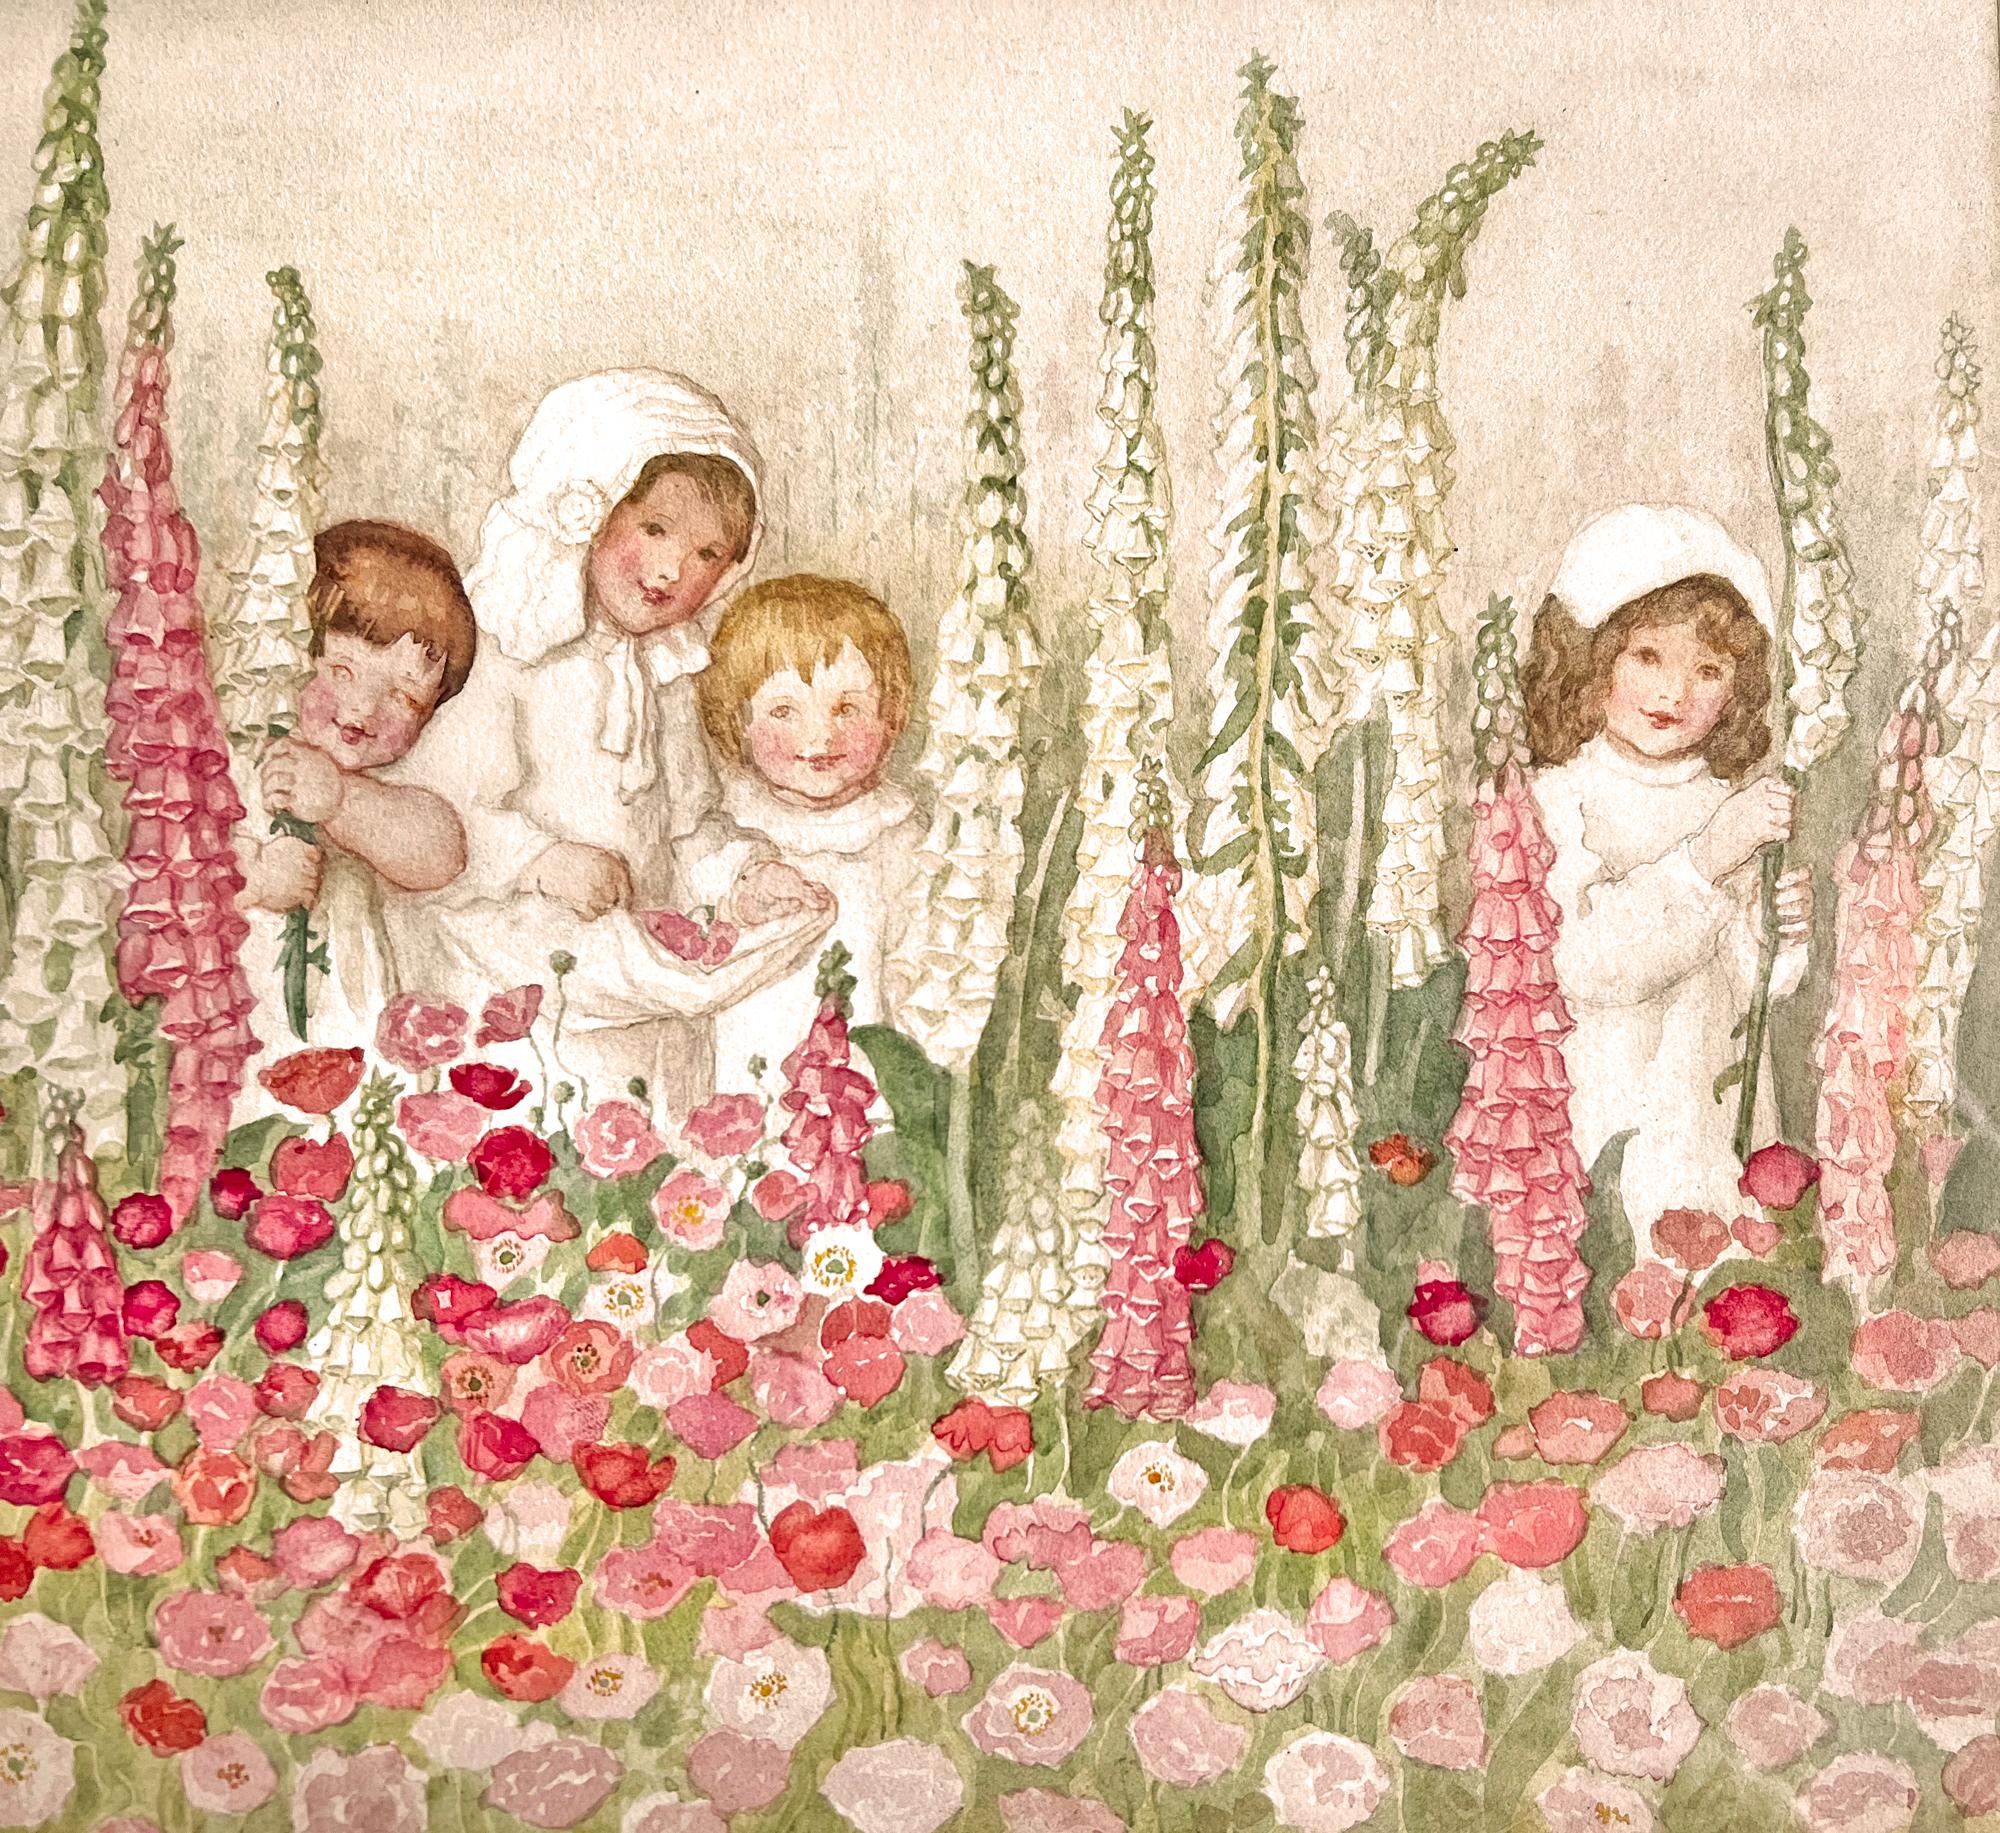 Kinder mit Fuchspelzen - Rosa Blumen, weibliche Illustratorin des Goldenen Zeitalters (Präraphaelismus), Art, von Amelia Bauerle  ( Bowerley ) 